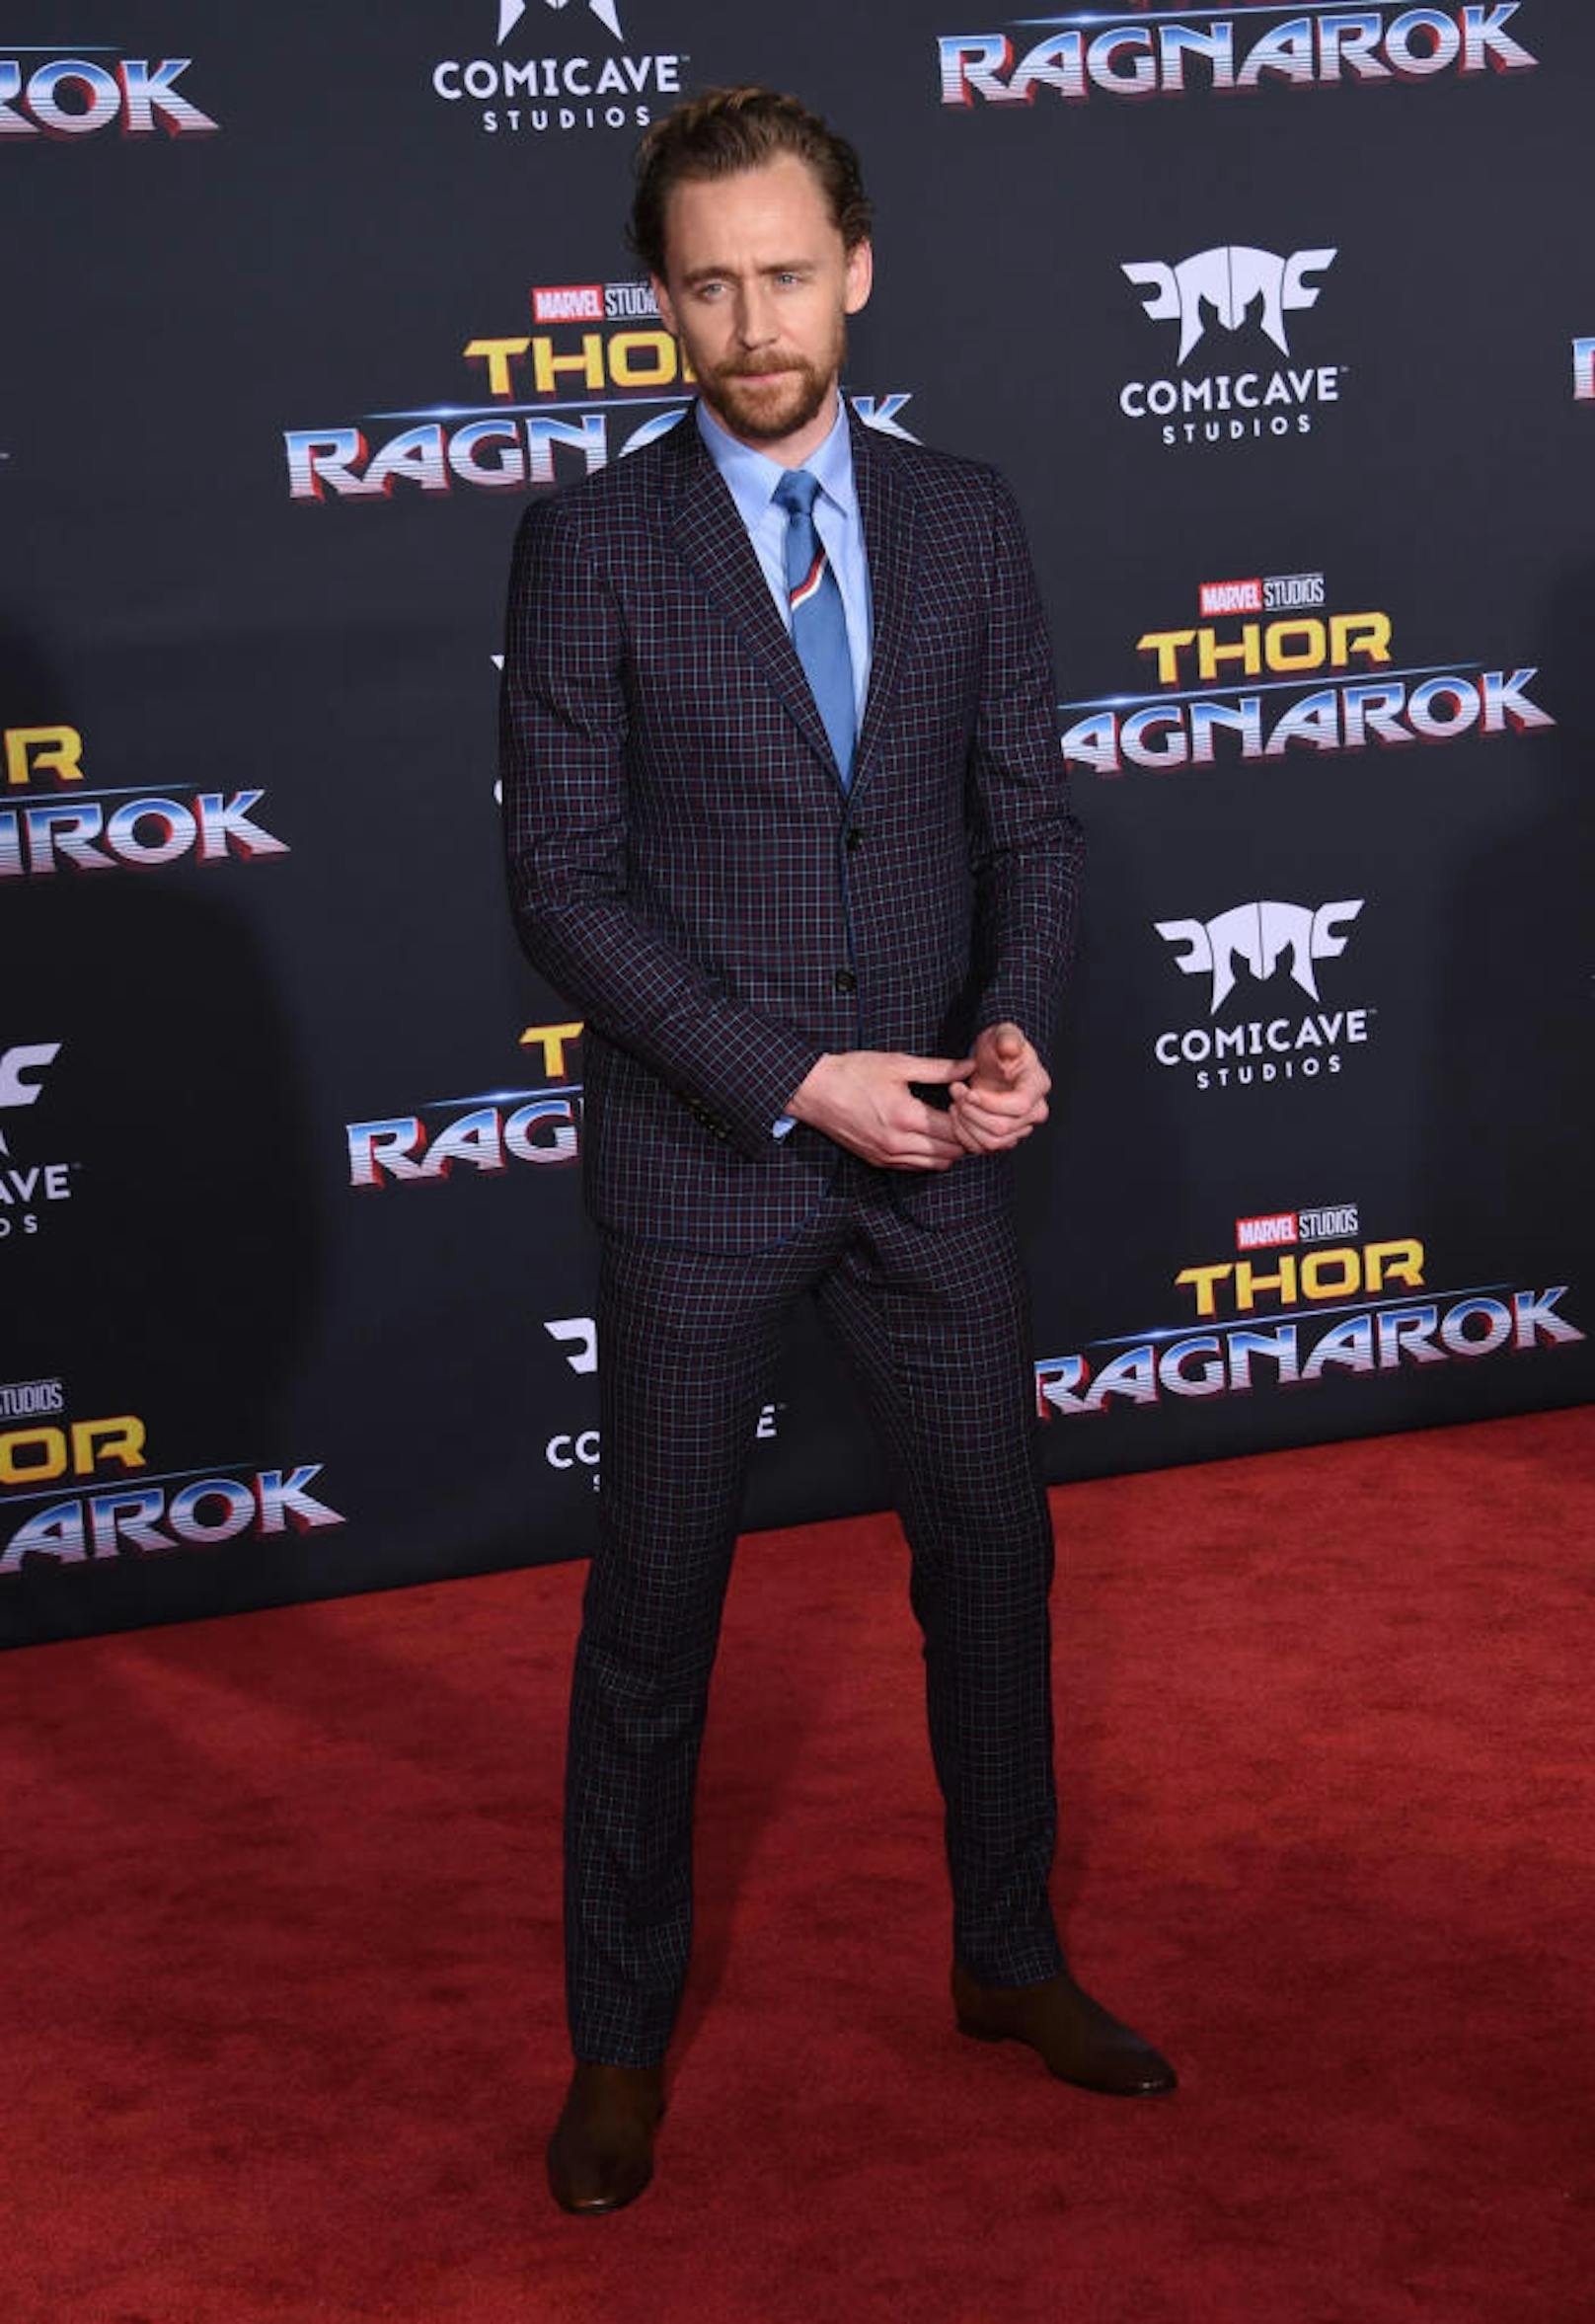 Kariert und mit Bart: In "Thor: Ragnarok" durfte er richtig witzig sein.